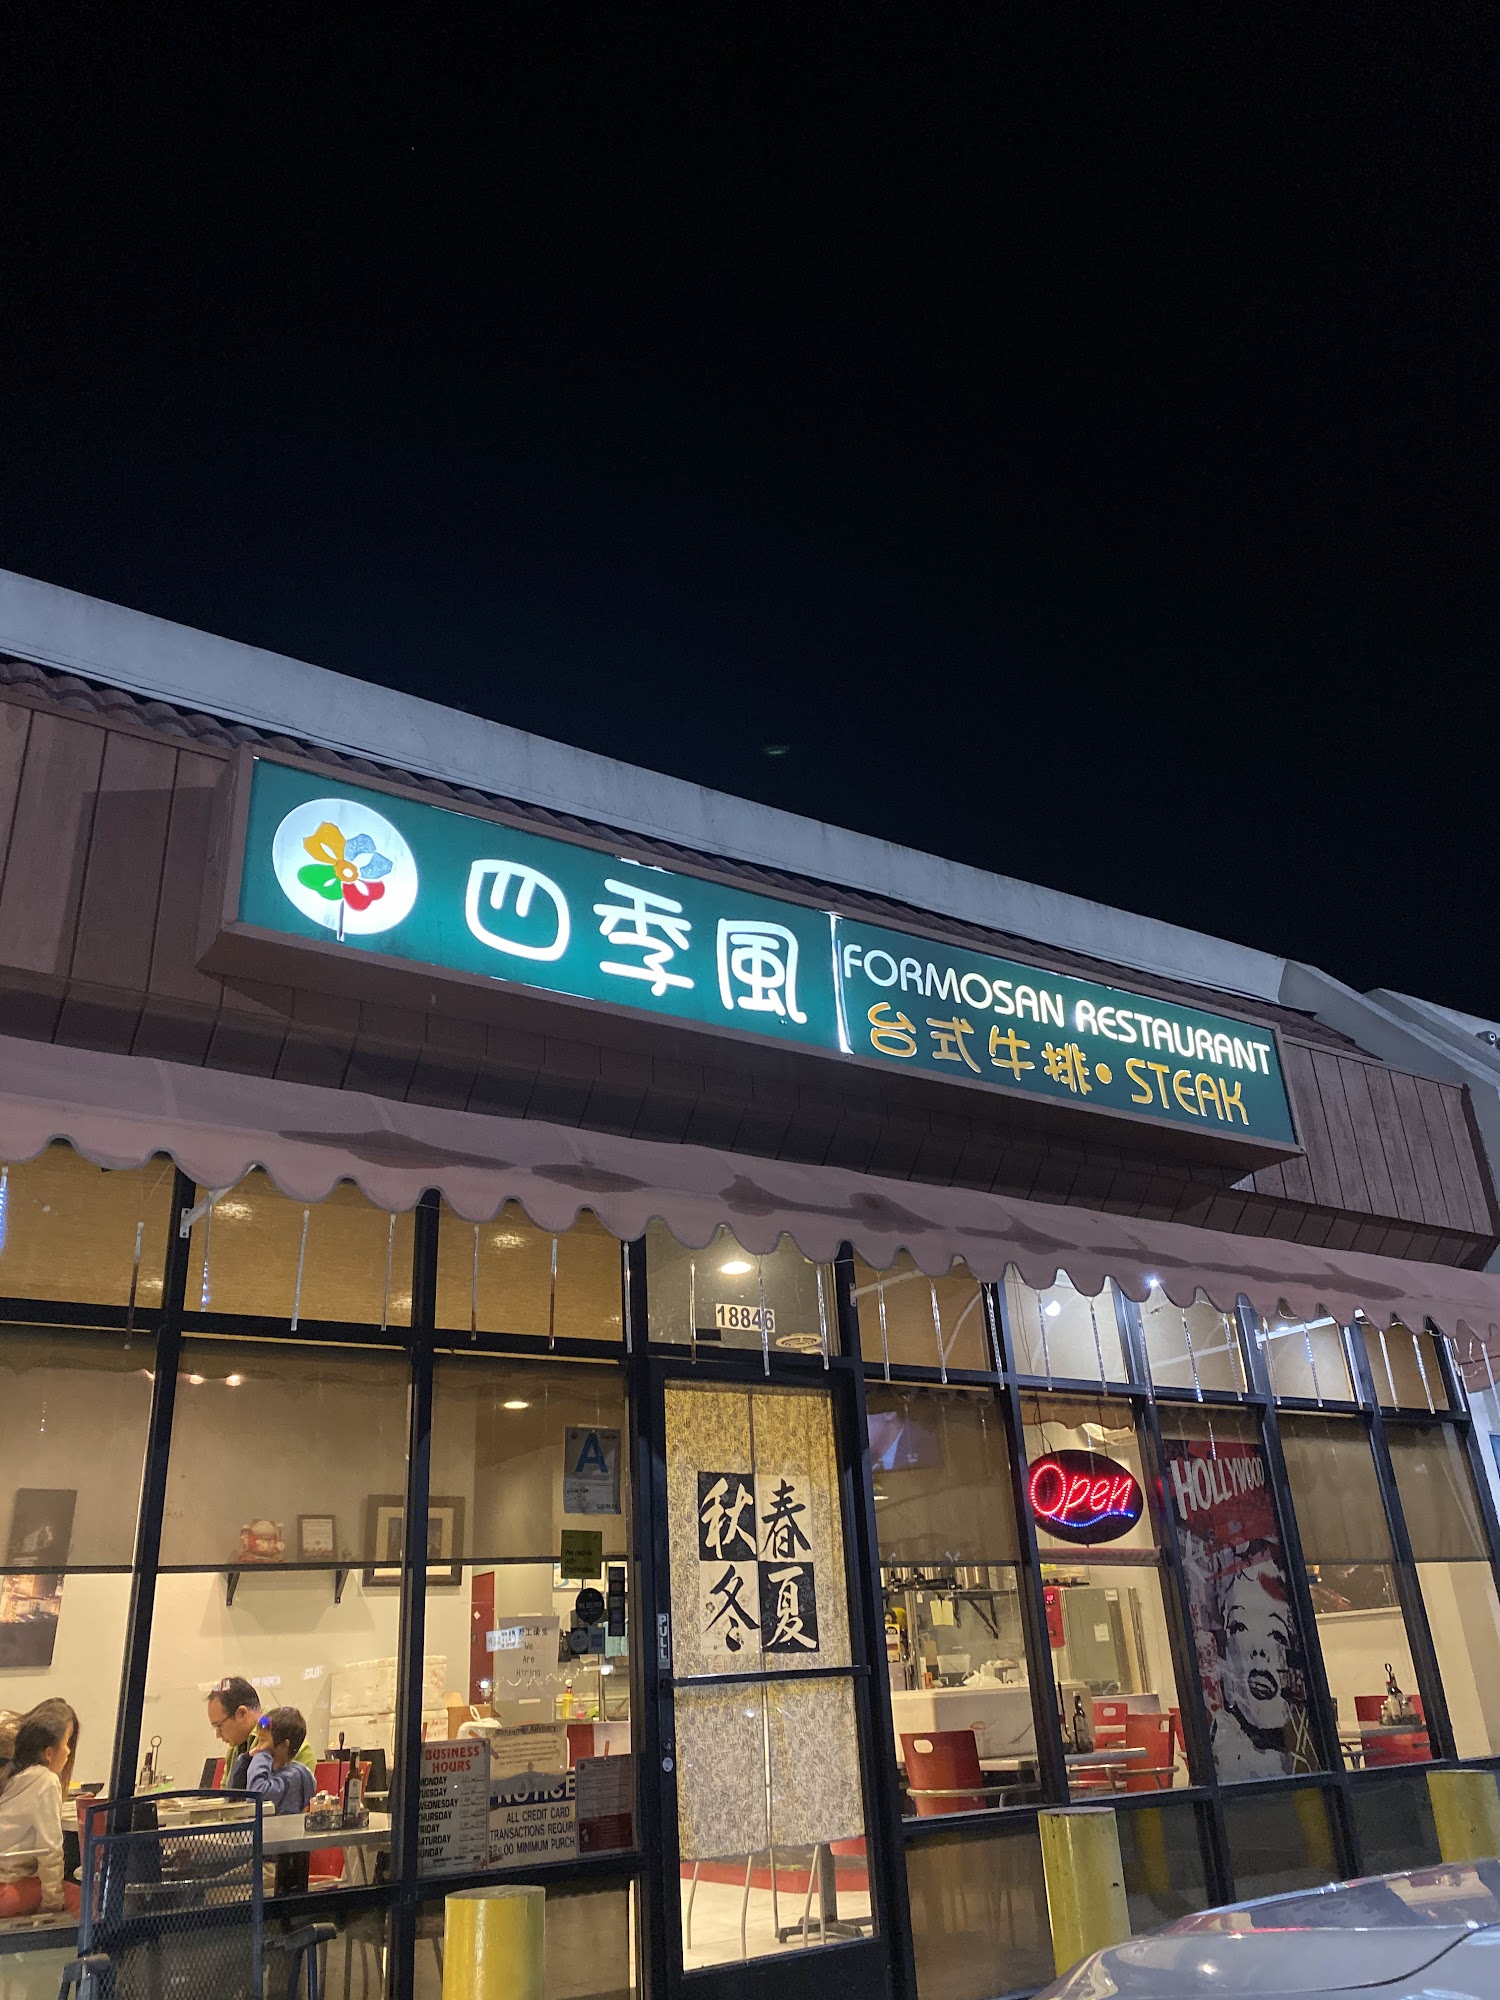 Formosan Restaurant